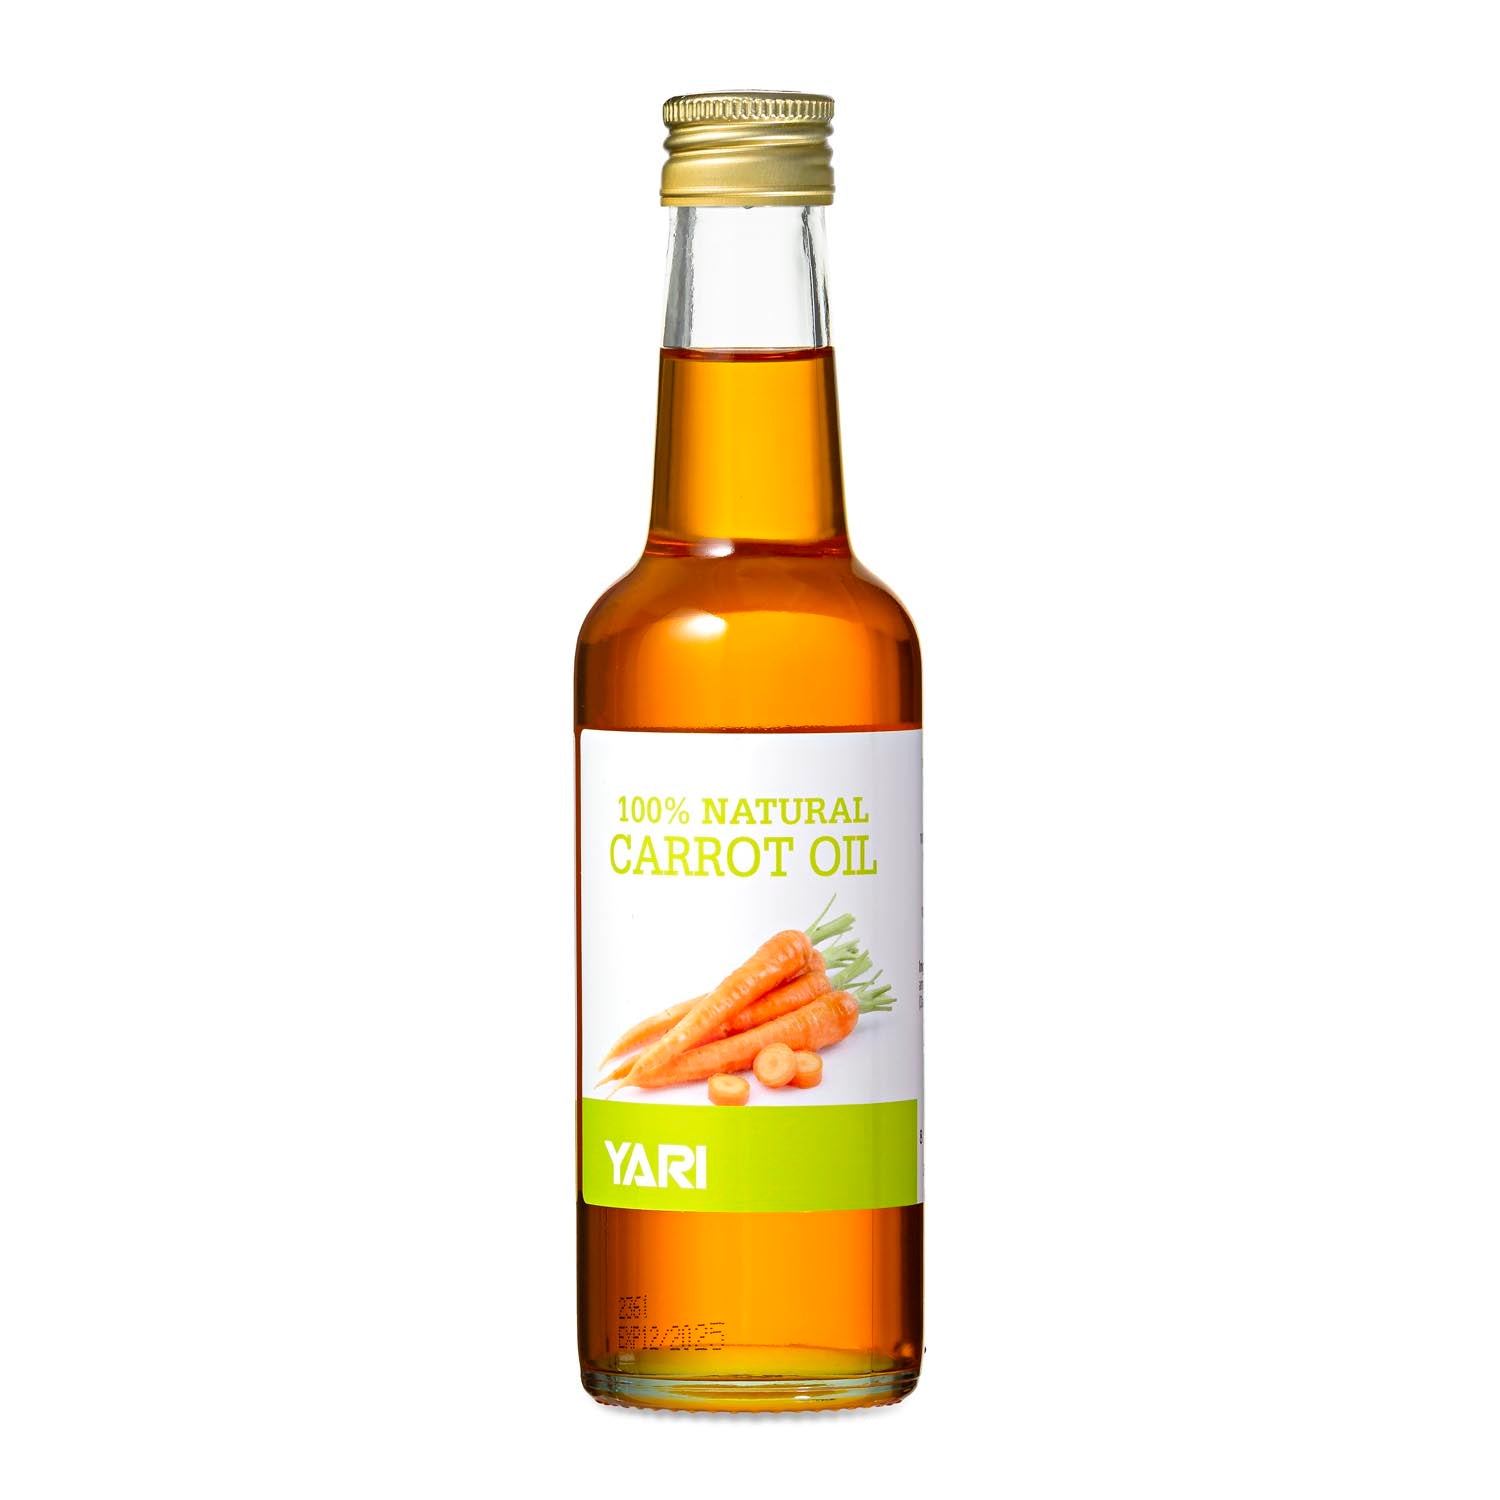 Yari - 100% Natural Carrot Oil 250ml